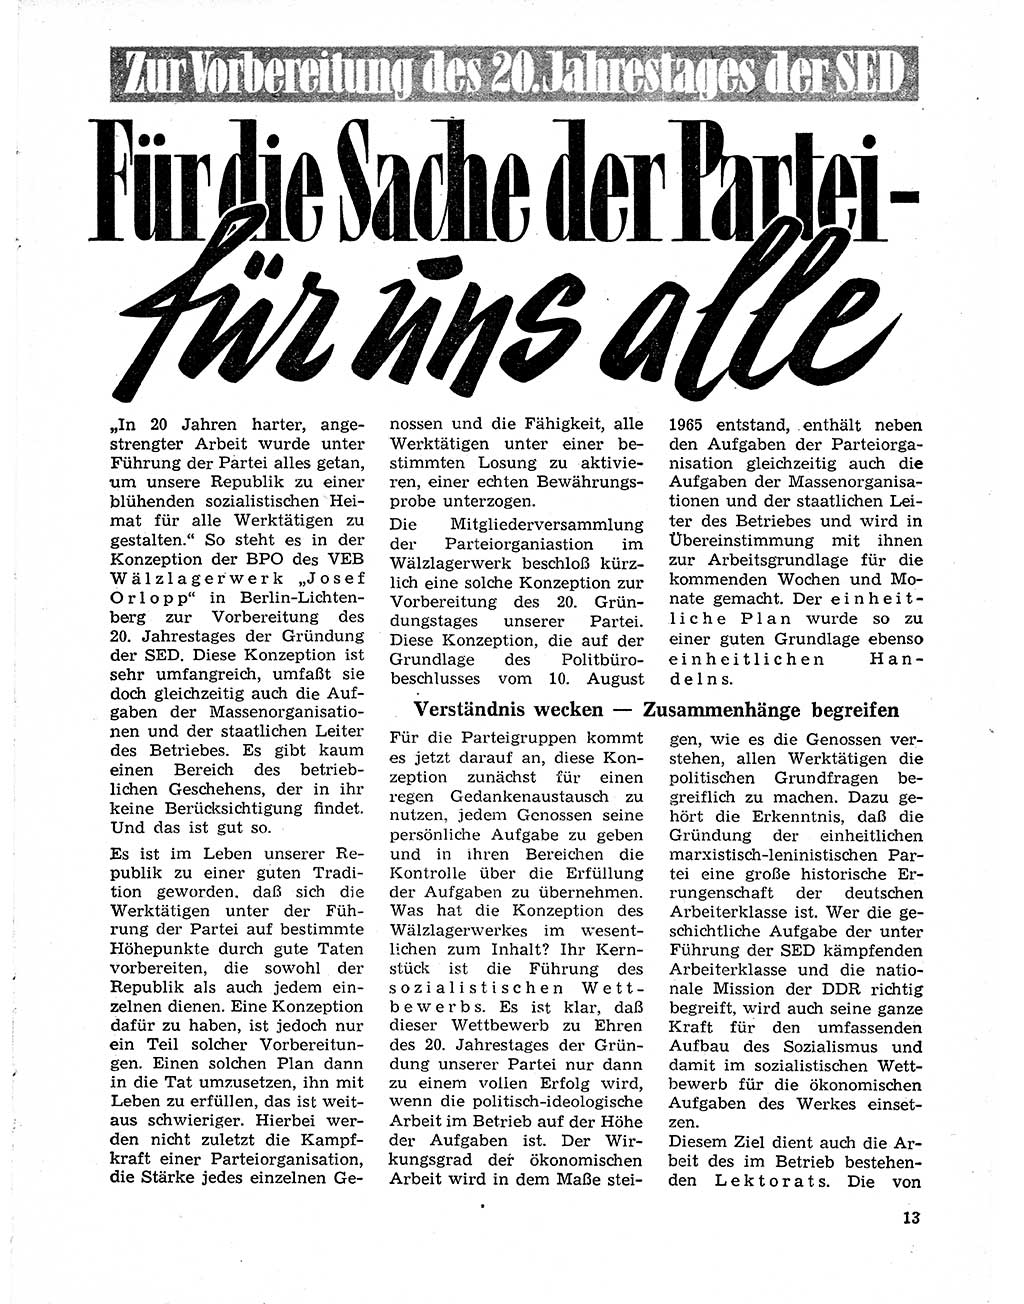 Neuer Weg (NW), Organ des Zentralkomitees (ZK) der SED (Sozialistische Einheitspartei Deutschlands) für Fragen des Parteilebens, 21. Jahrgang [Deutsche Demokratische Republik (DDR)] 1966, Seite 13 (NW ZK SED DDR 1966, S. 13)